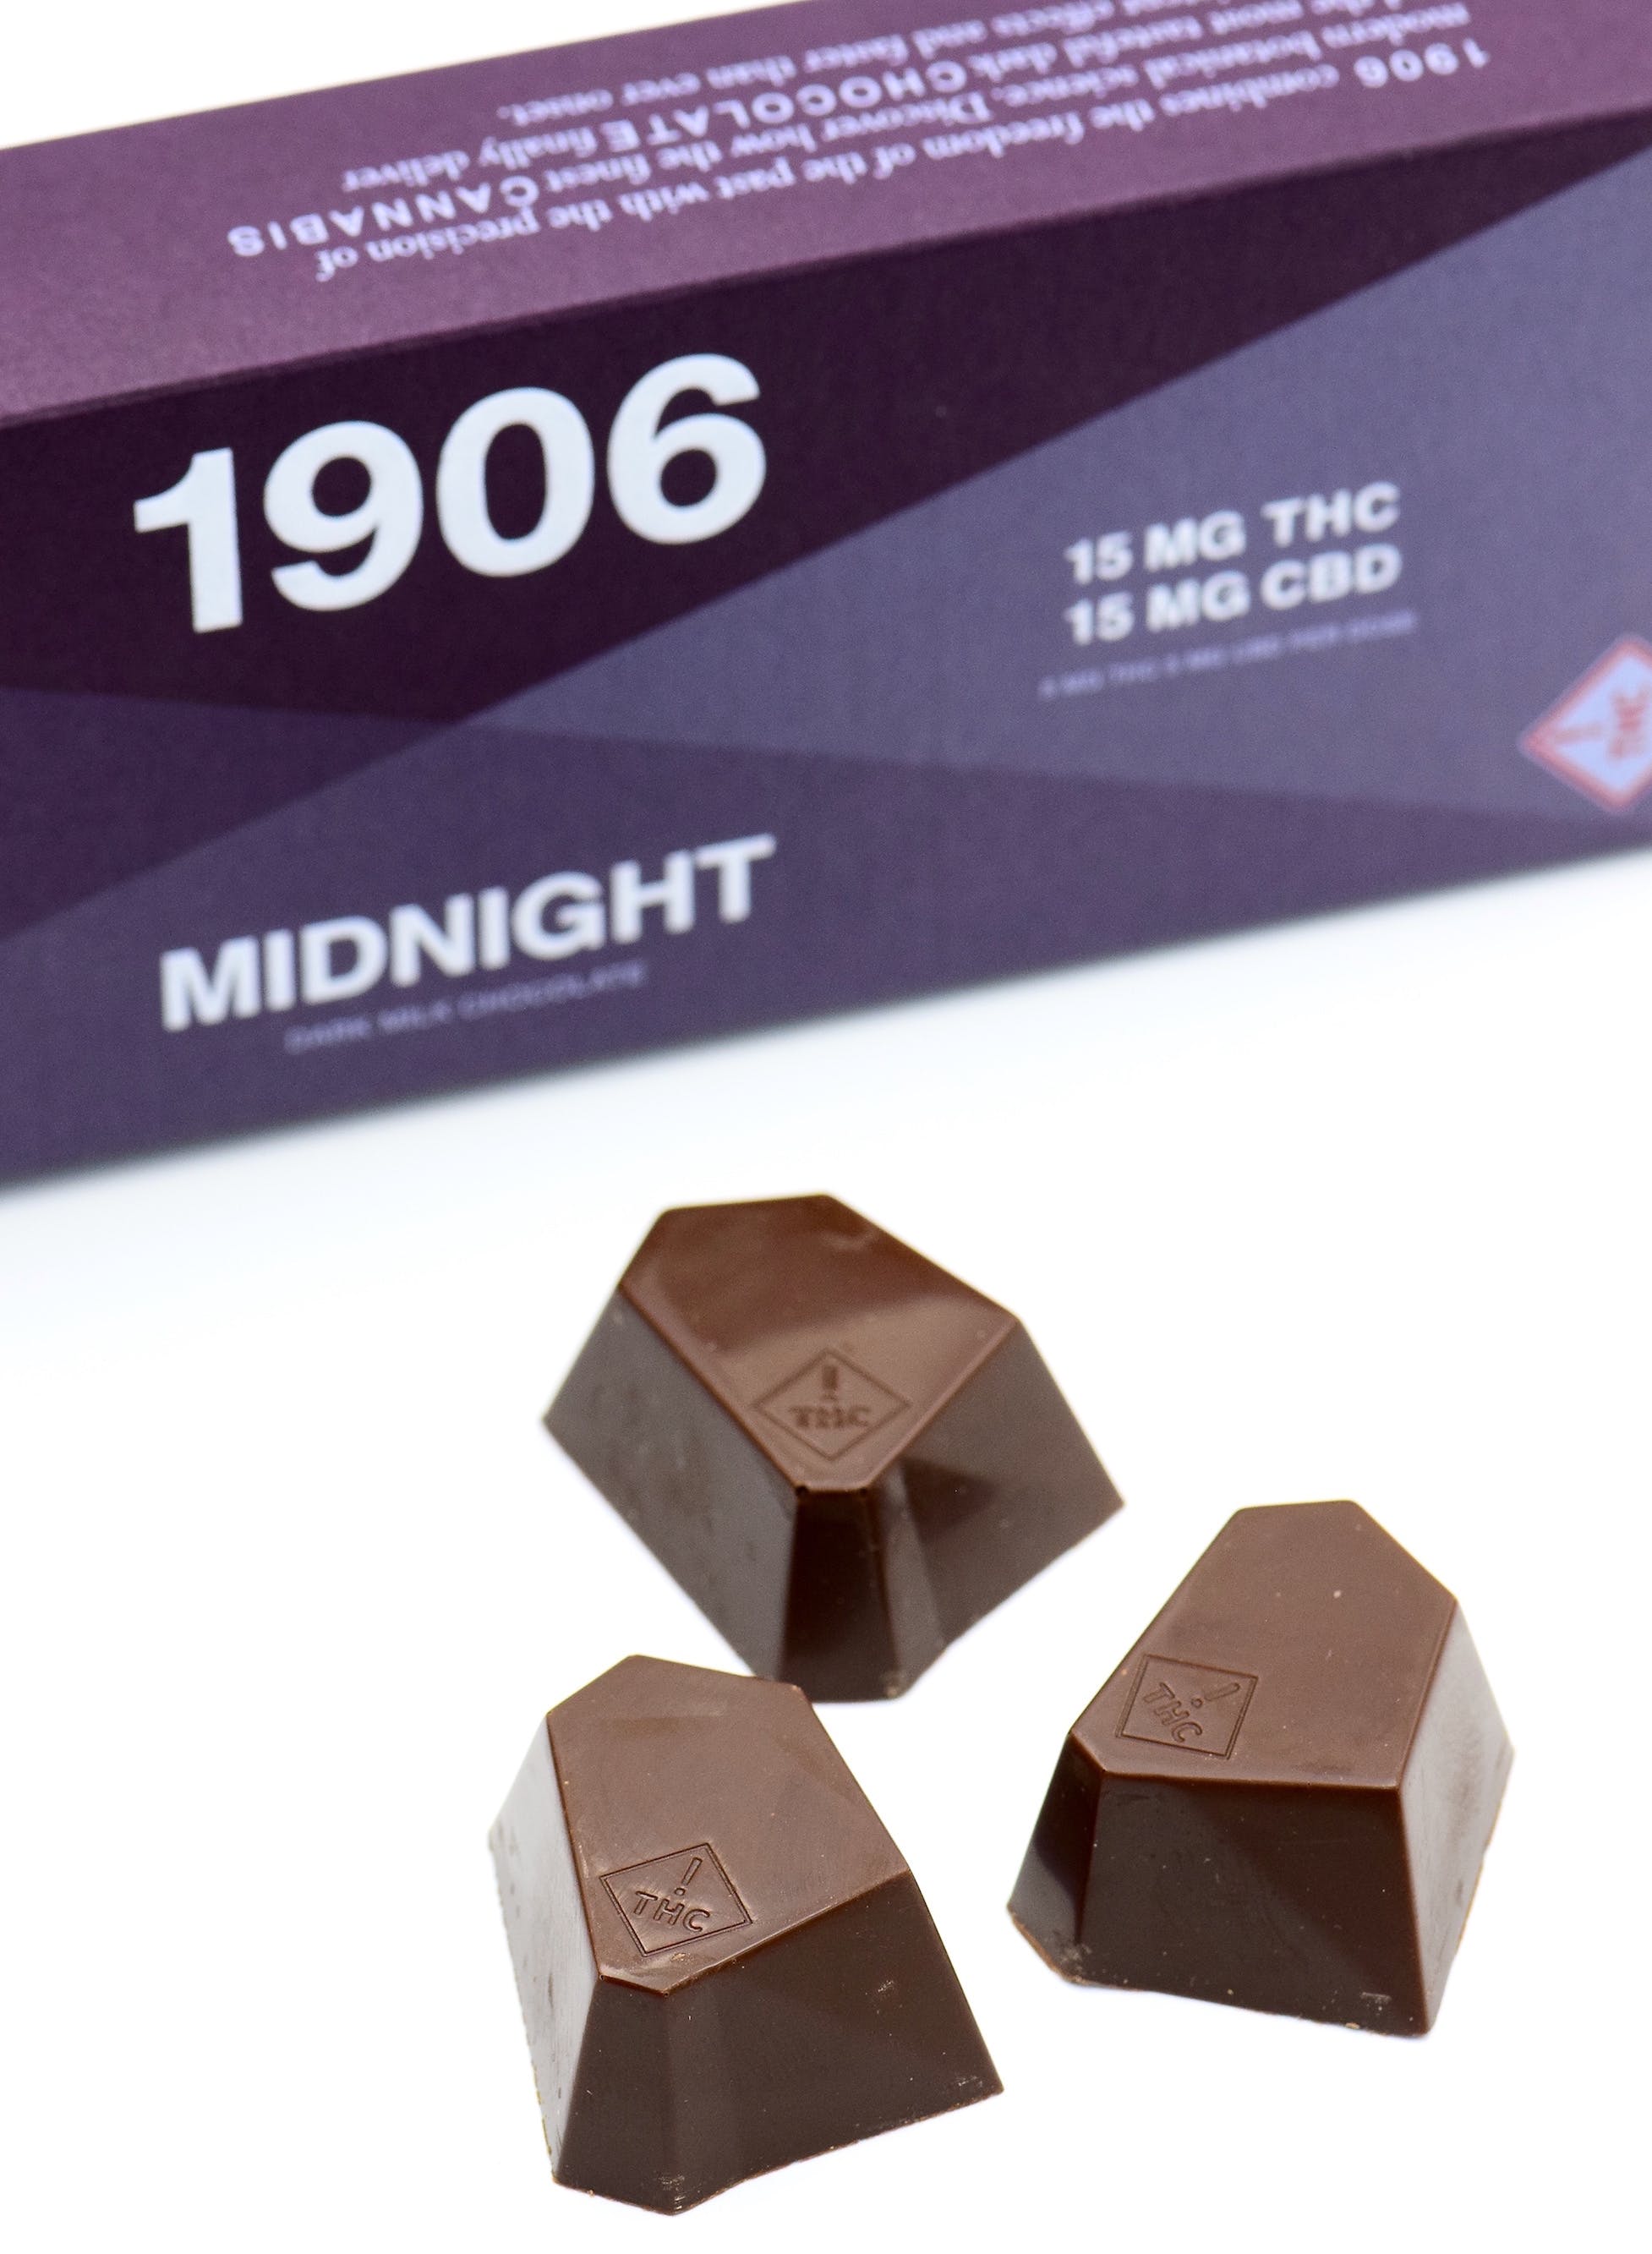 edible-1906-new-highs-1906-midnight-15mg-thc15mg-cbd-3-pack